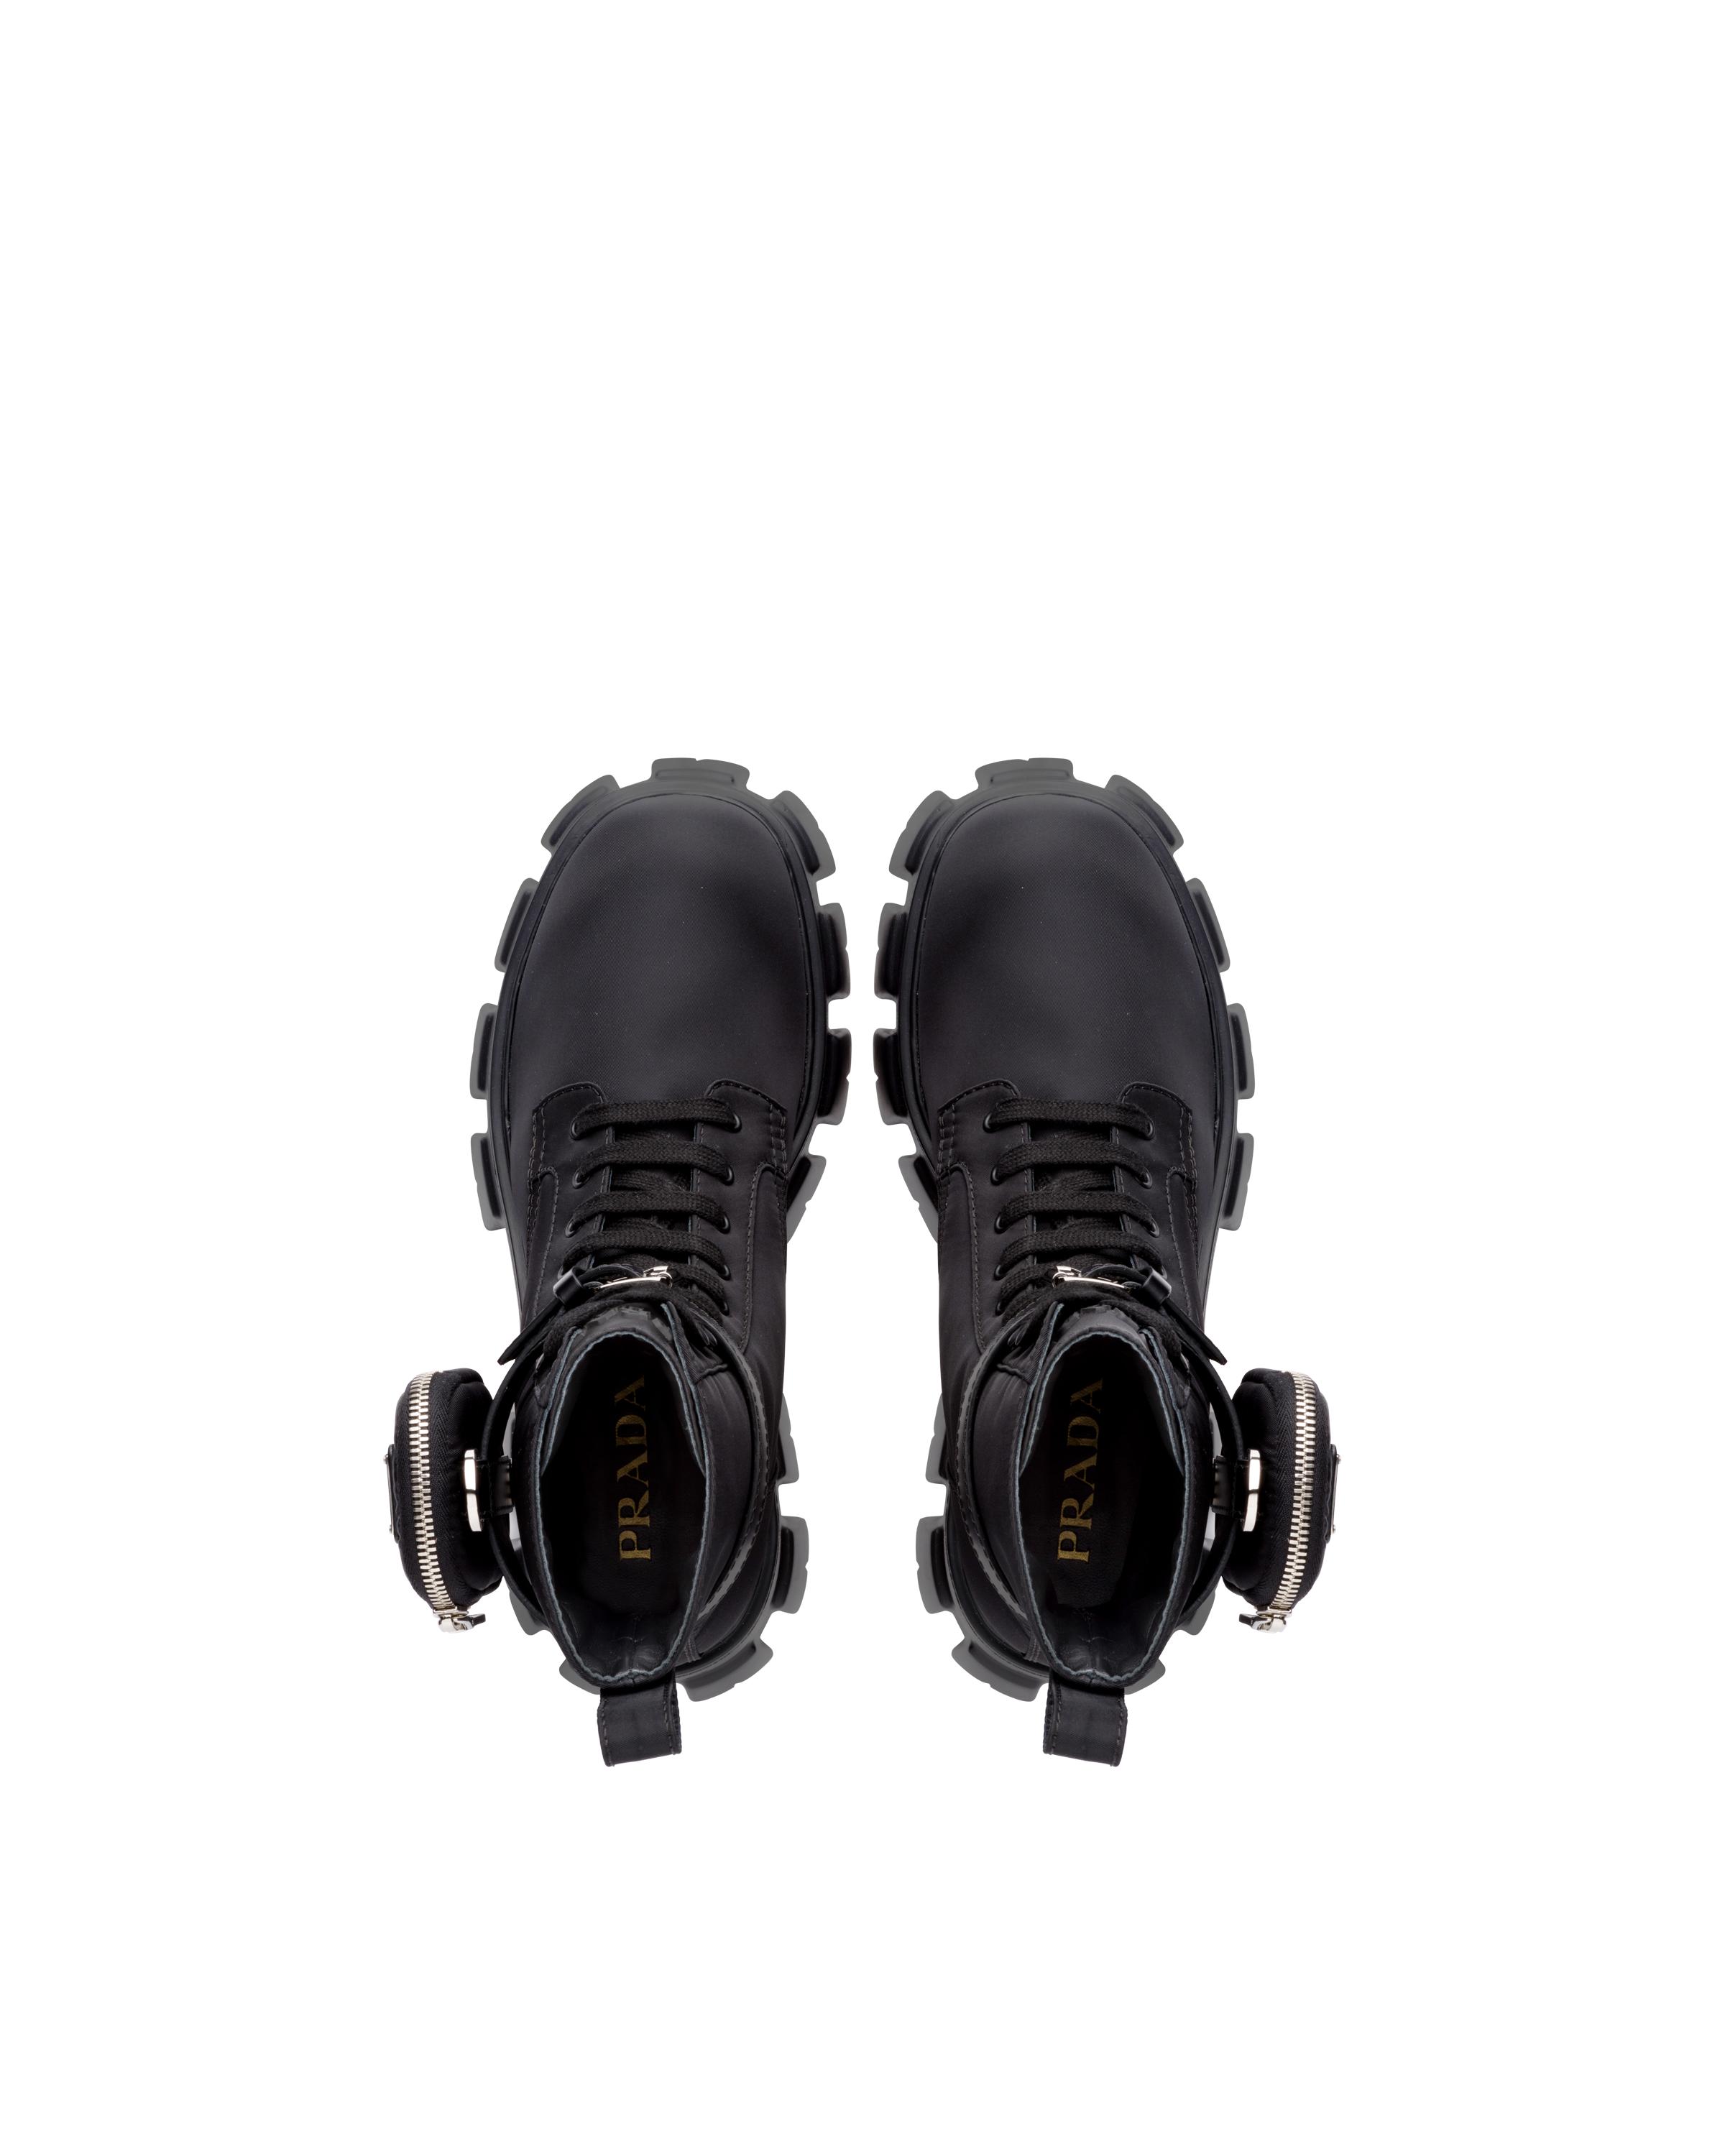 Prada Synthetic Re-nylon Gabardine Booties in Black for Men - Lyst